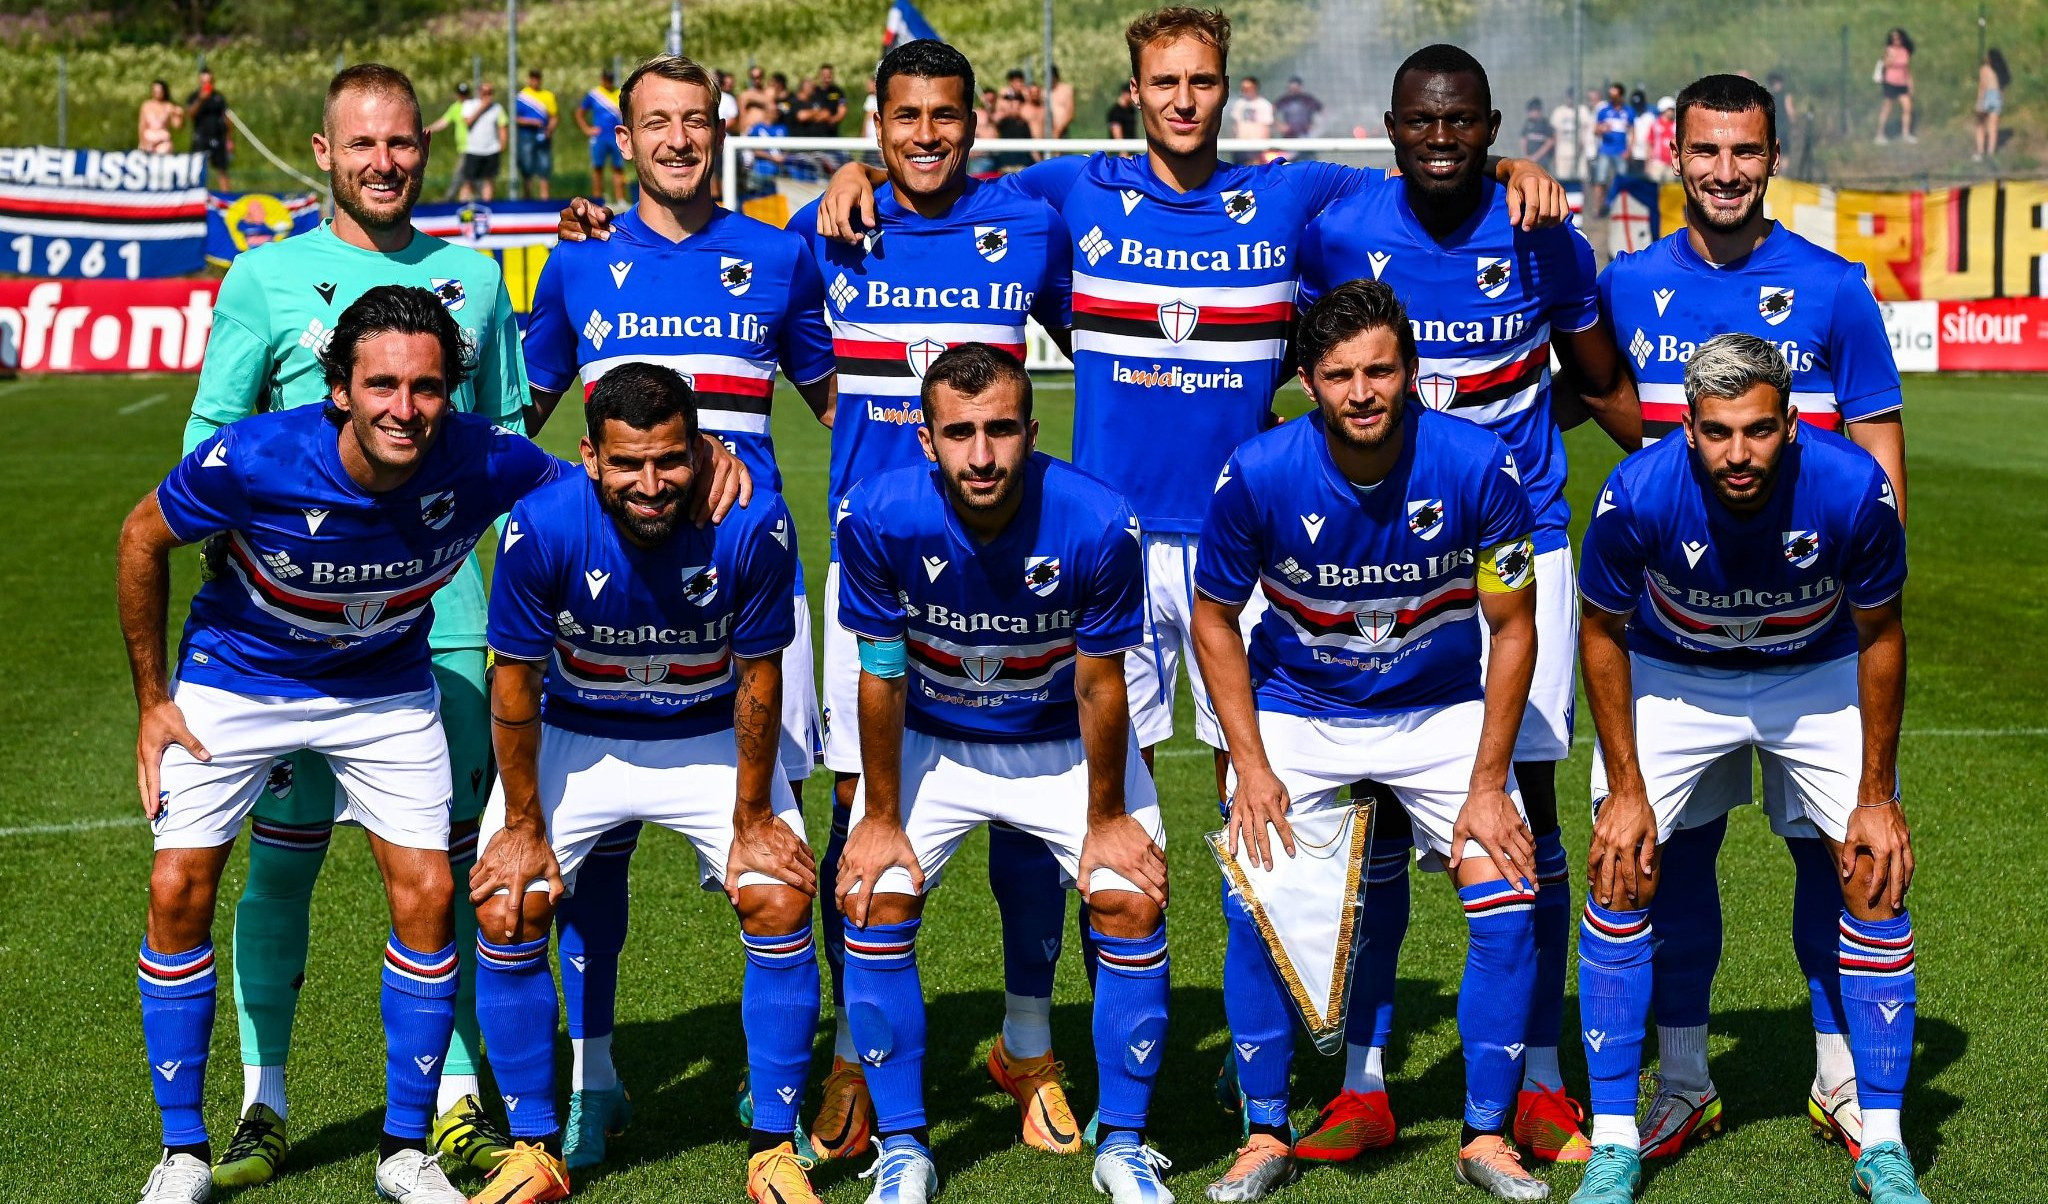 Sampdoria-Bienno 7-0, il video con tutti i gol